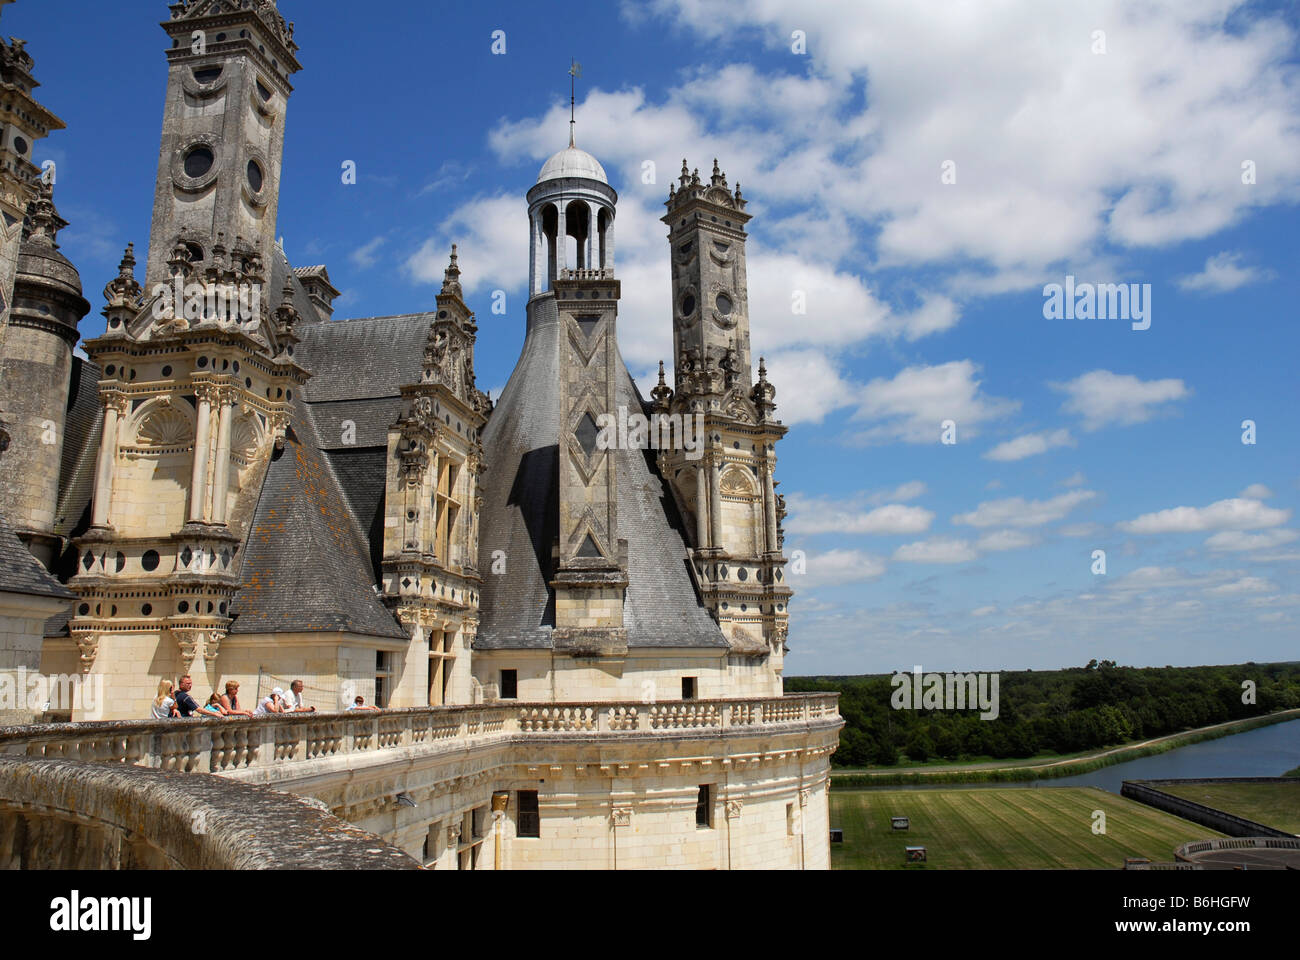 Chateau Royal de Chambord French Renaissance, Loire valley Loir et Cher Touraine France World heritage of the UNESCO Stock Photo